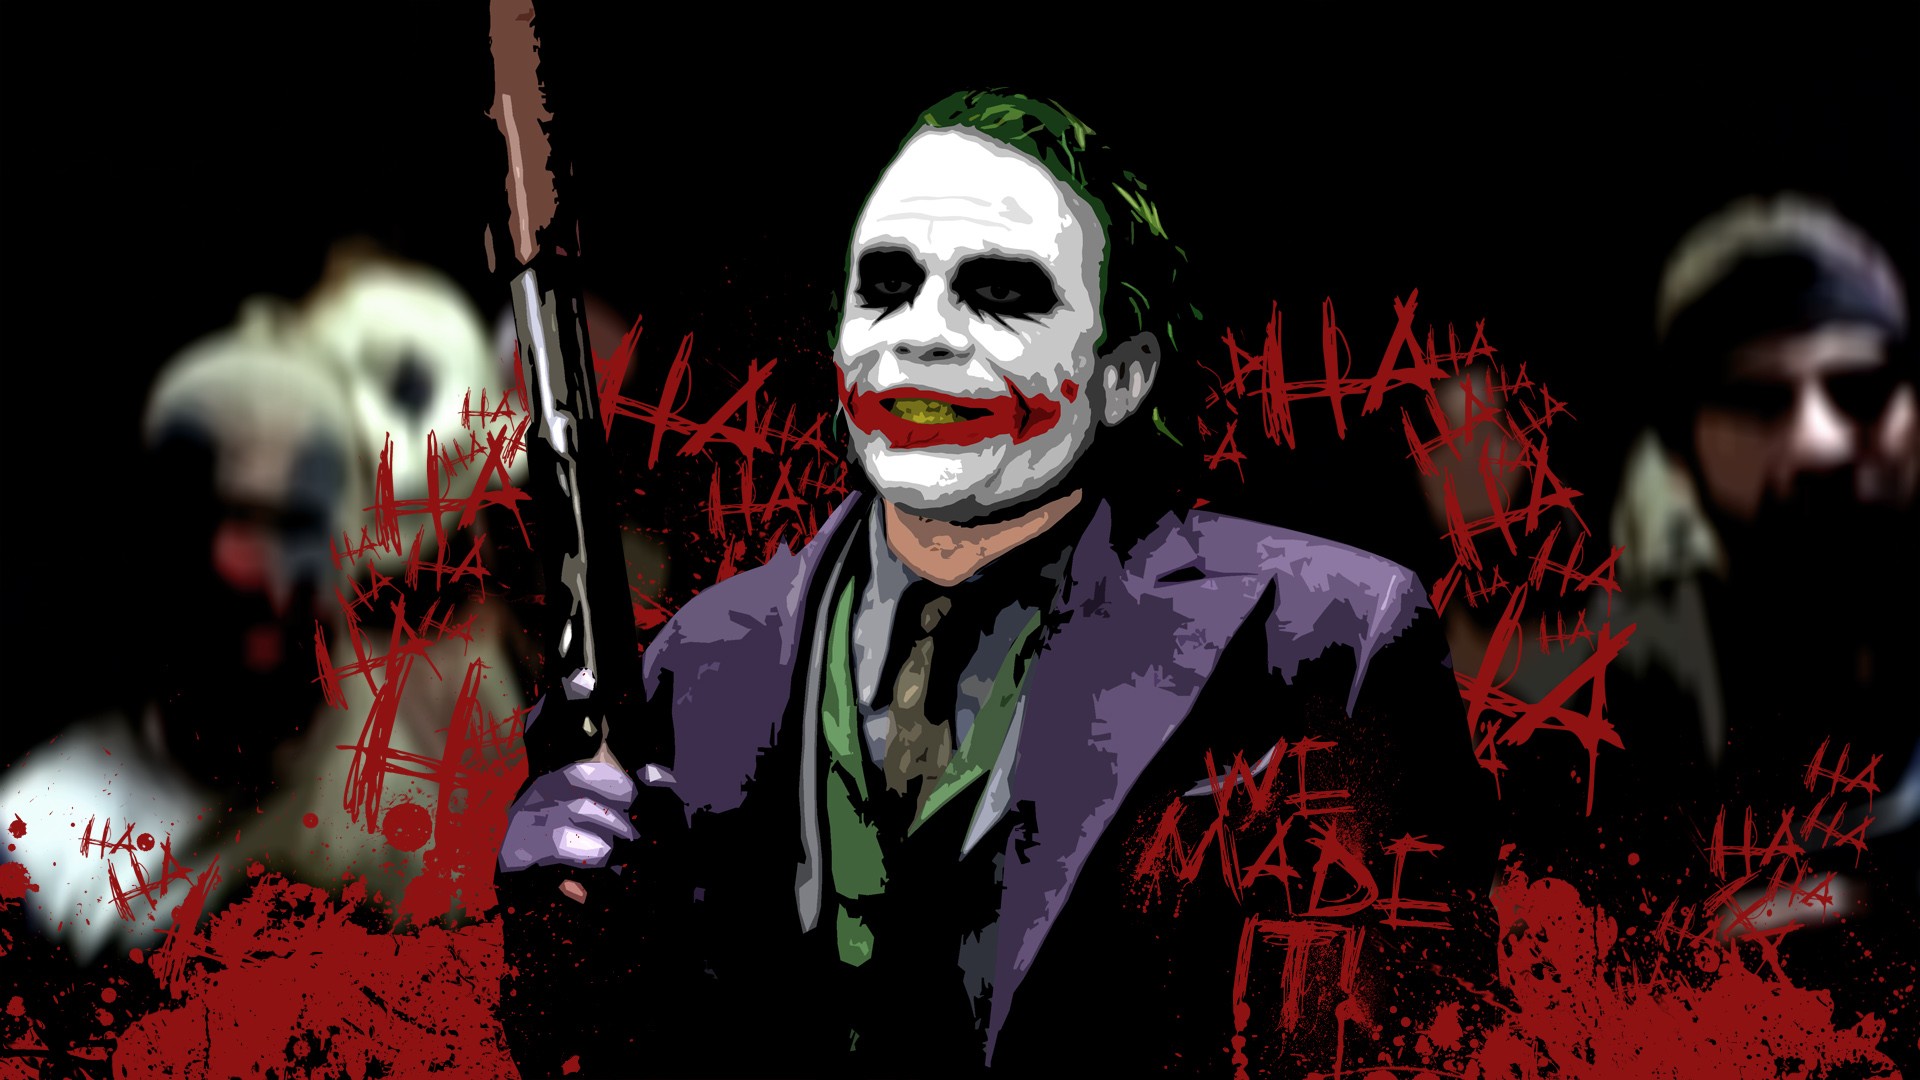 dark knight joker wallpaper hd,joker,supervillain,fictional character,clown,batman